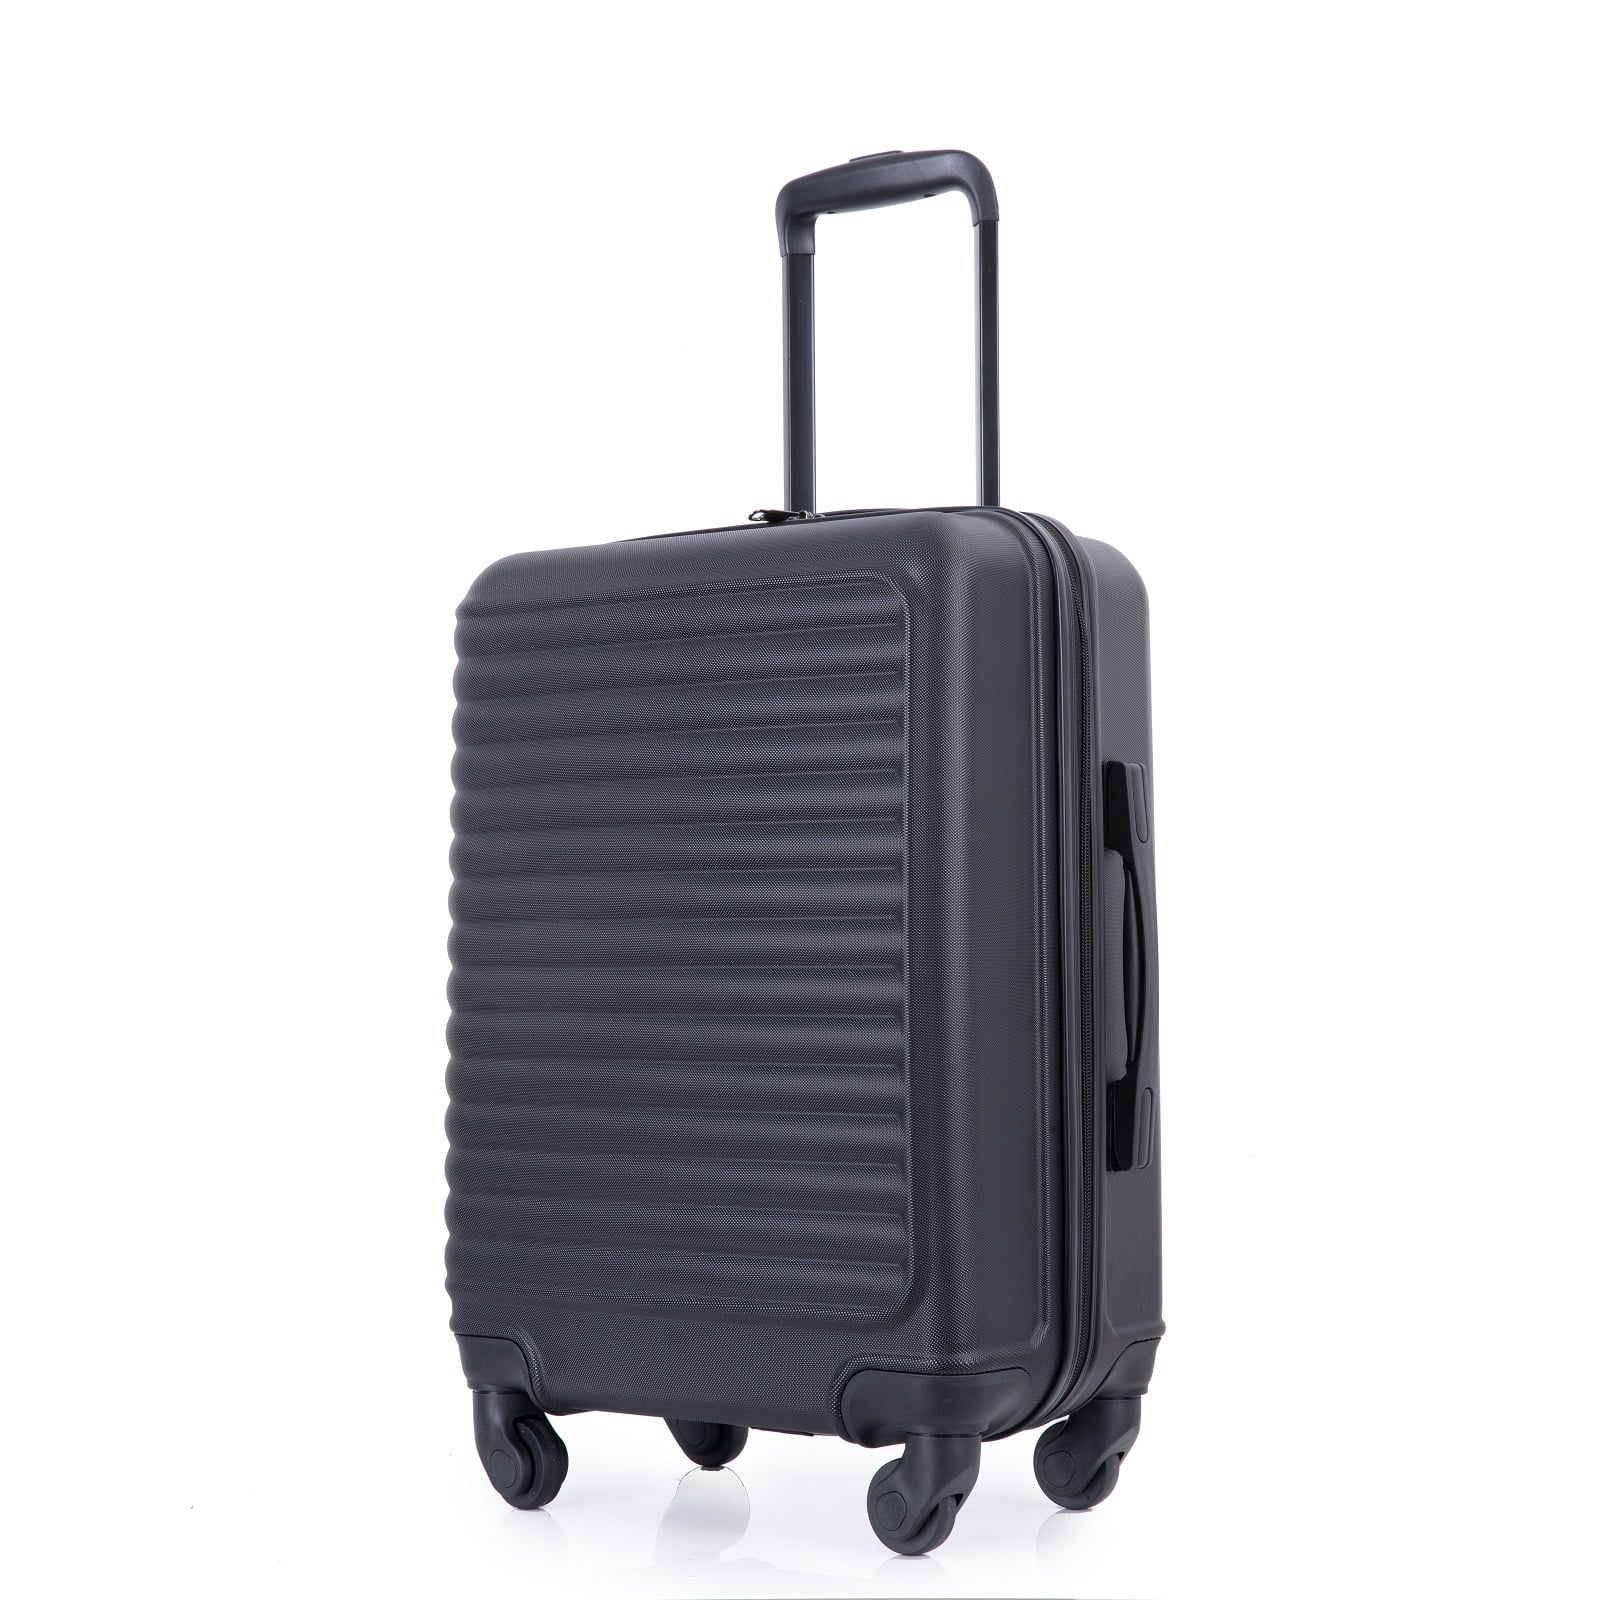 Travelhouse Underseat Hardshell Carry On Luggage 20" Lightweight Hardside Suitcase With Silent Sp... | Walmart (US)